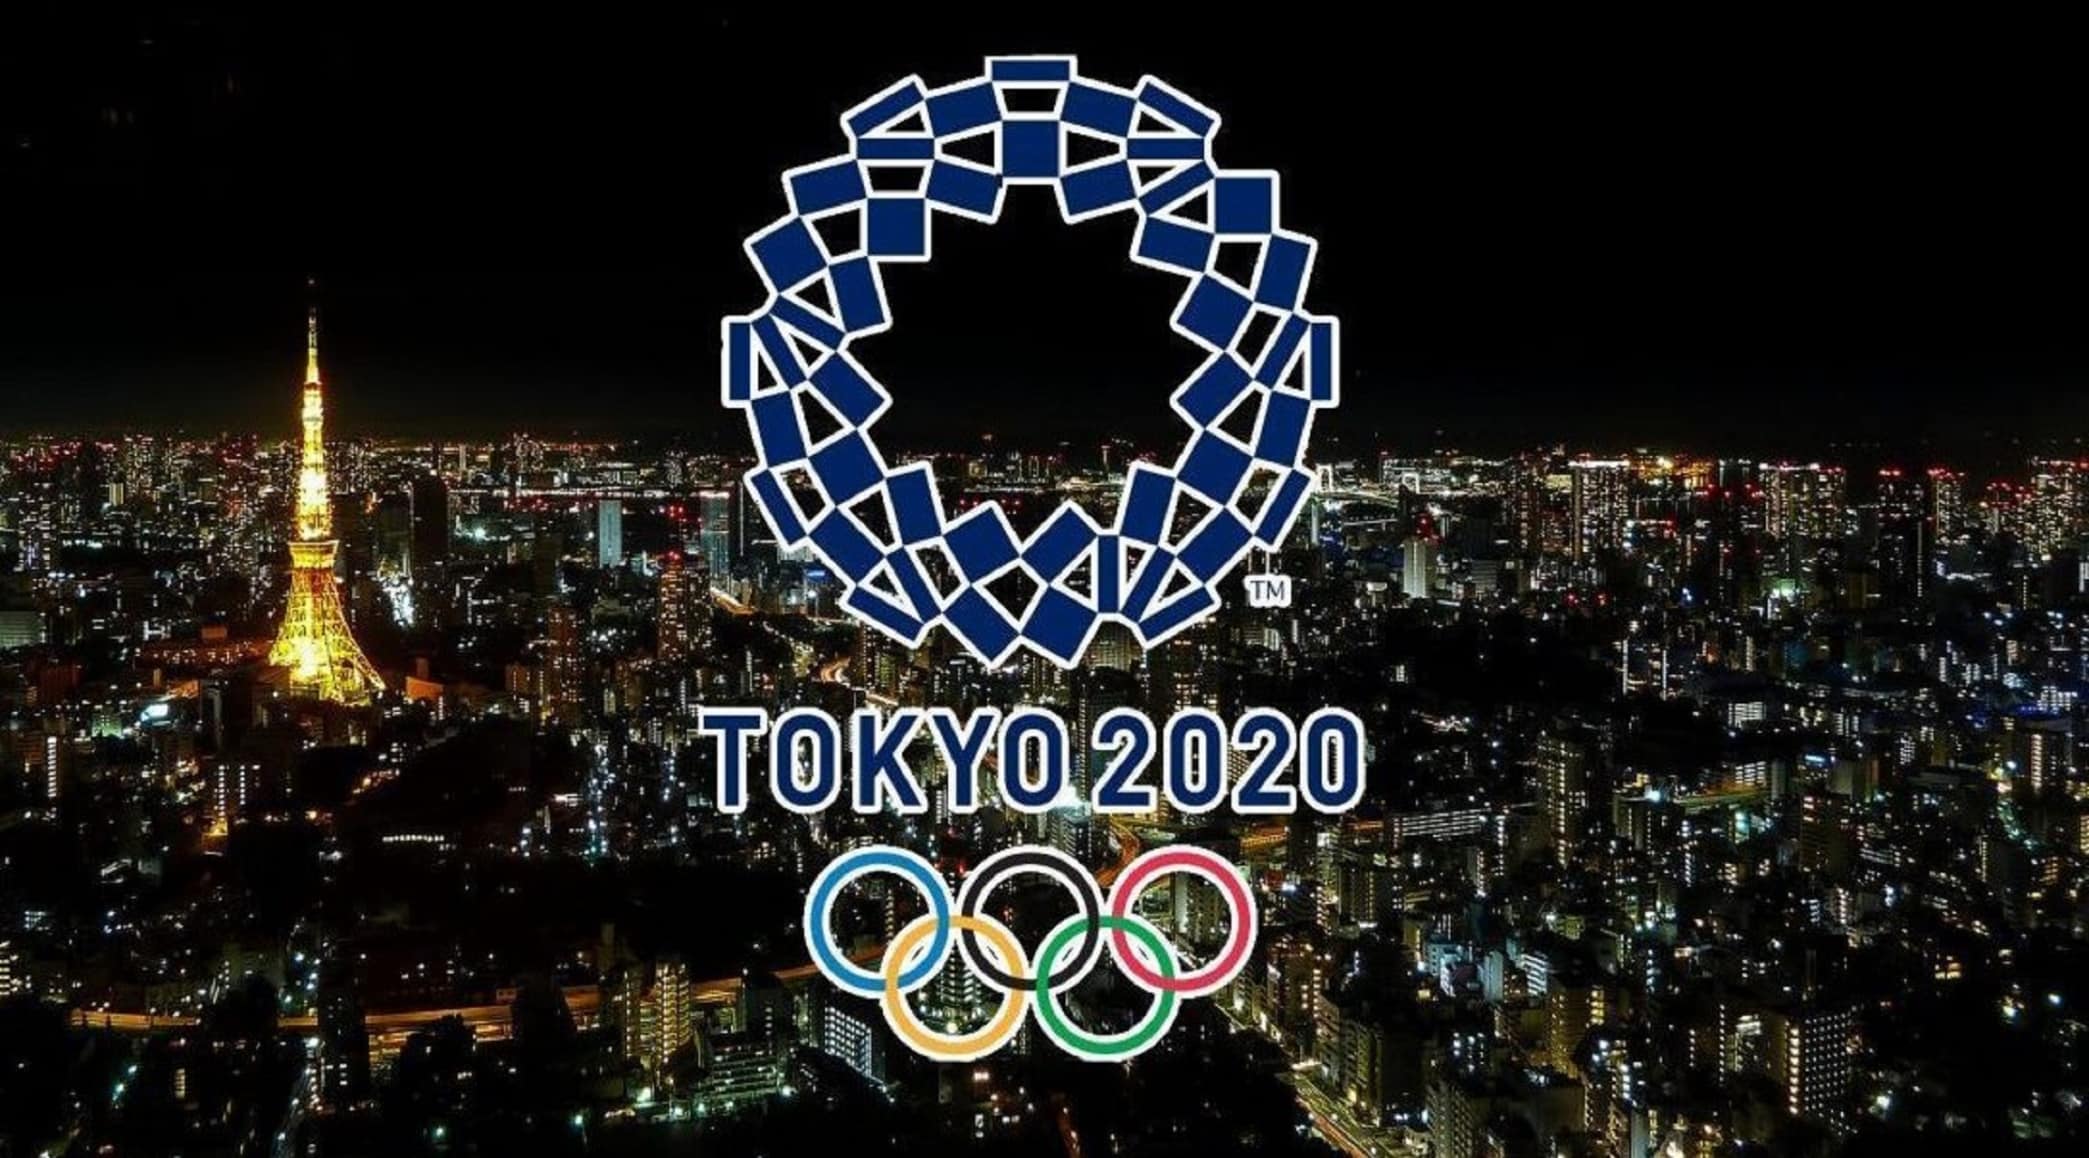 رئيس اللجنة المنظمة يُنهي الجدل حول إلغاء أولمبياد طوكيو